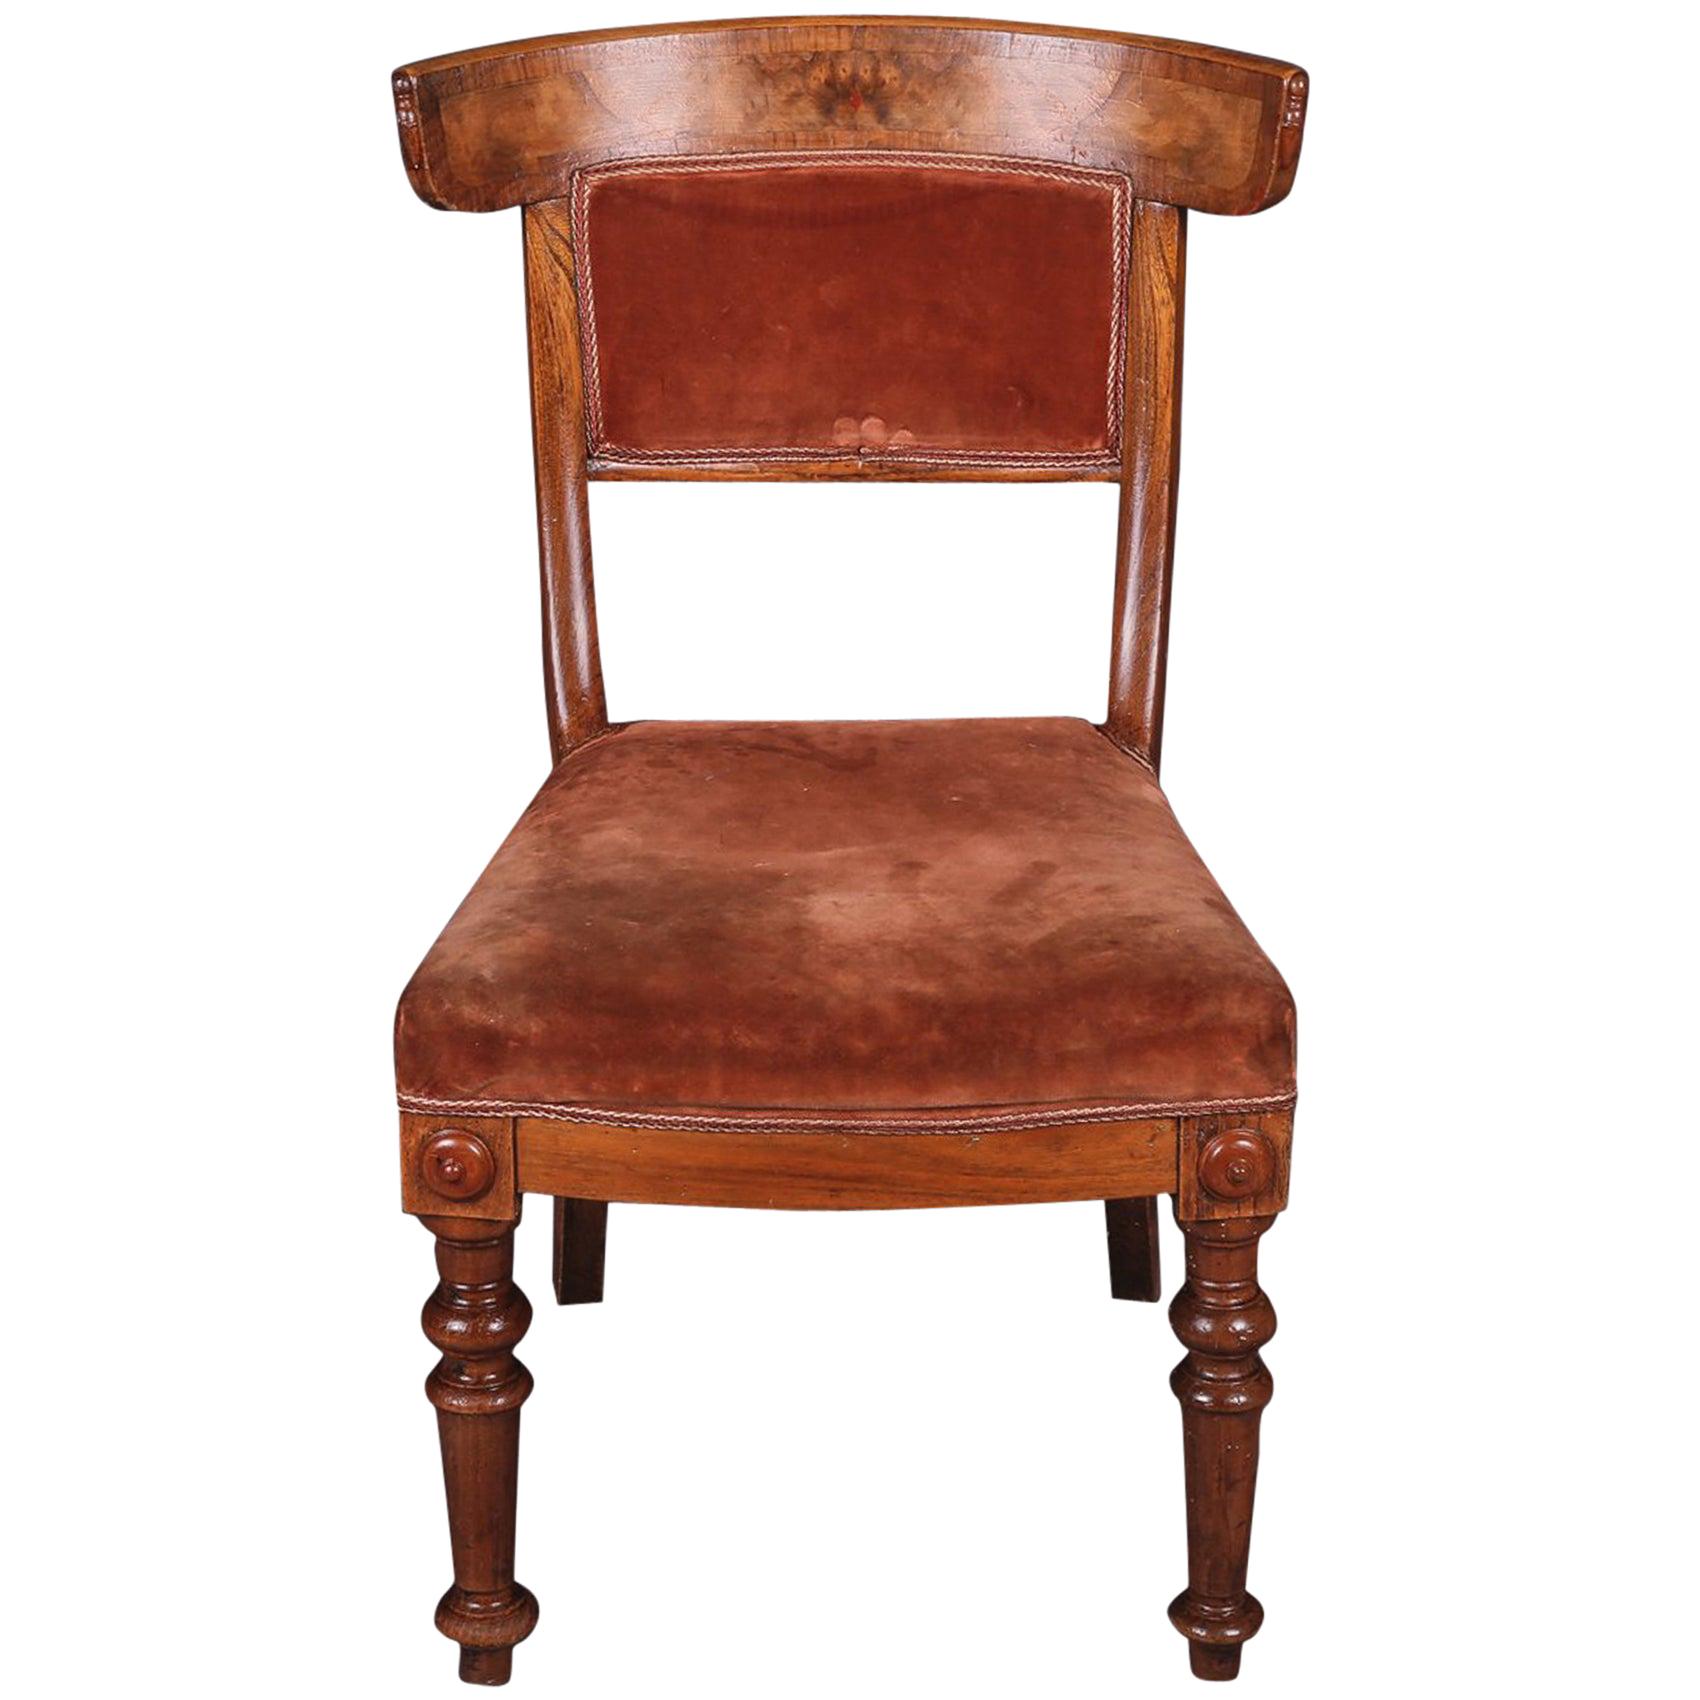 Biedermeier-Stuhl mit geschwungener Rückenlehne aus dem 19. Jahrhundert